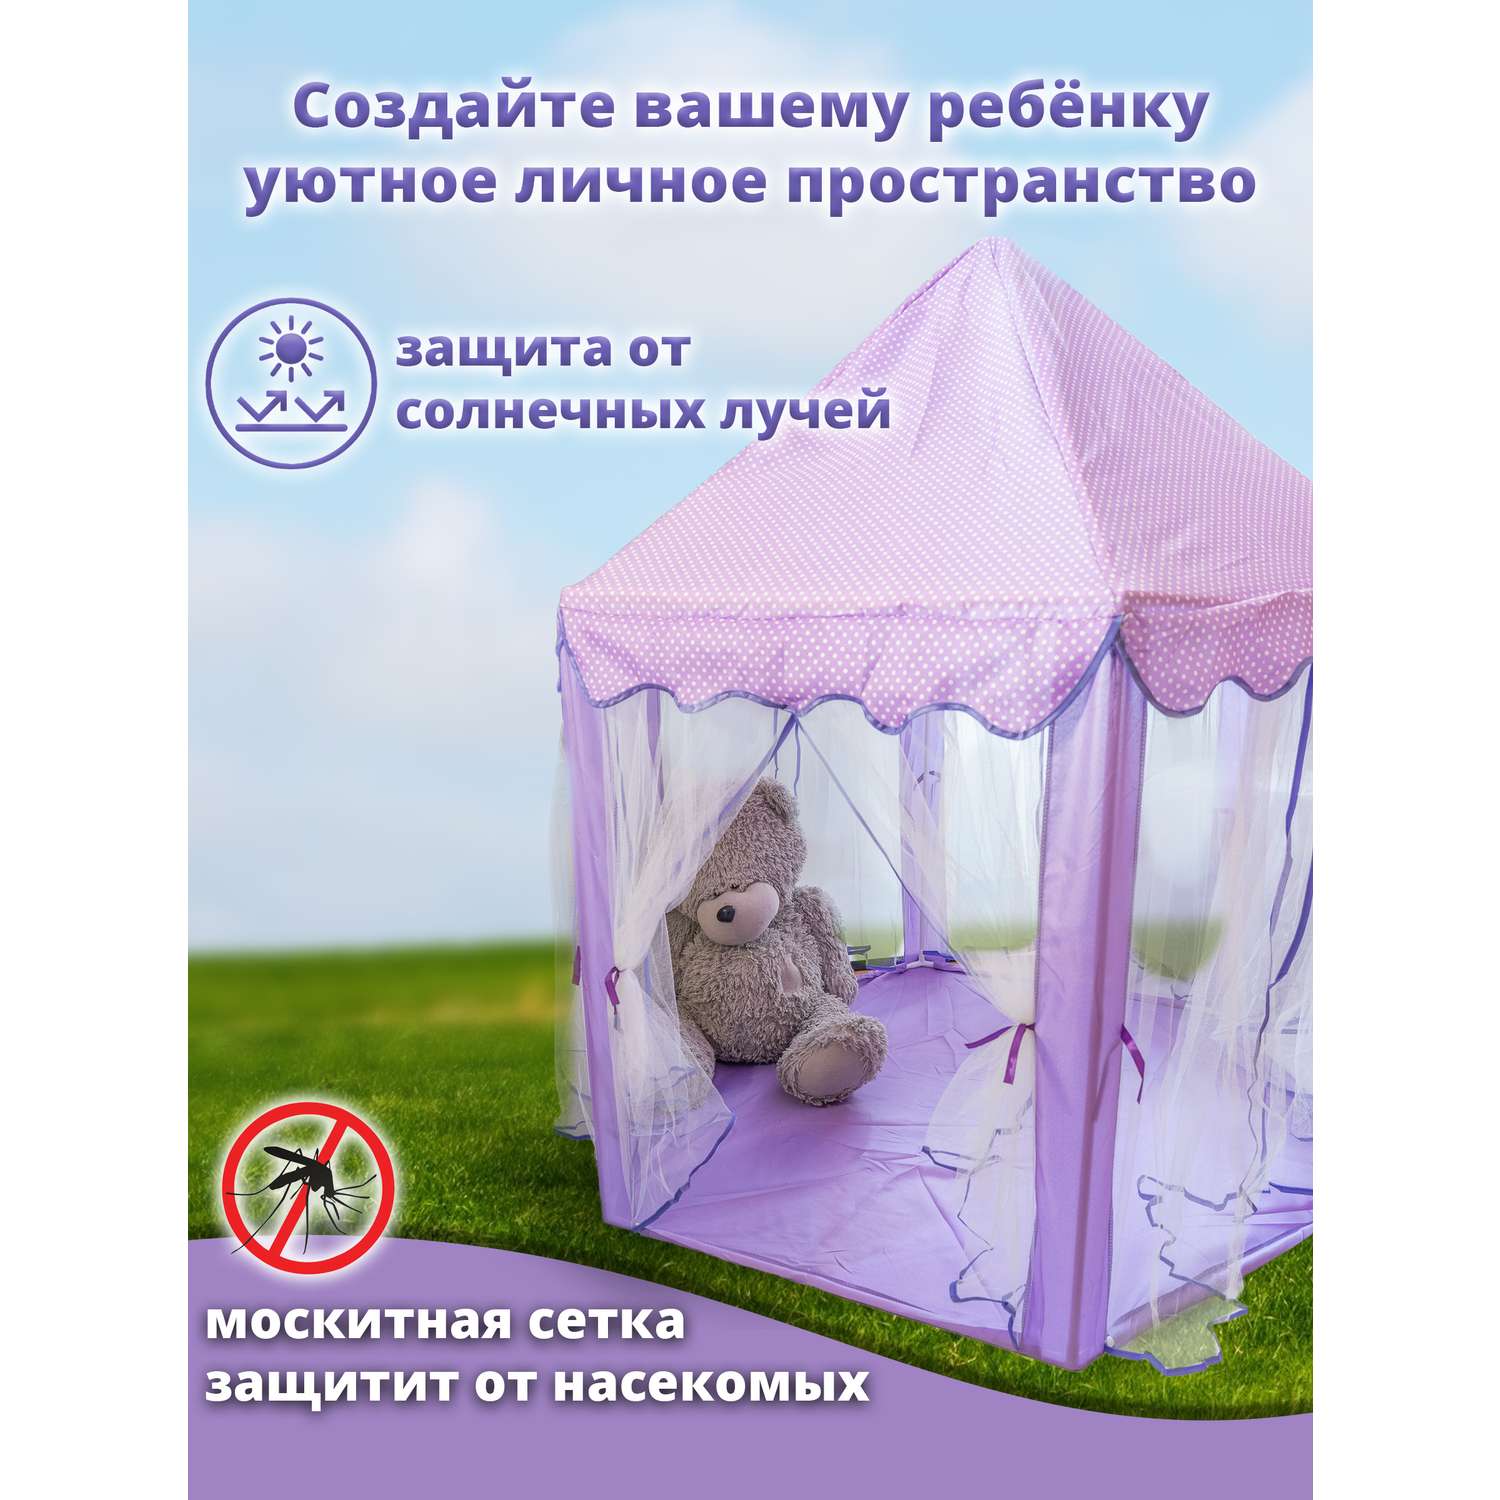 Палатка детская Играй с умом шатер для дома улицы детского сада - фото 3